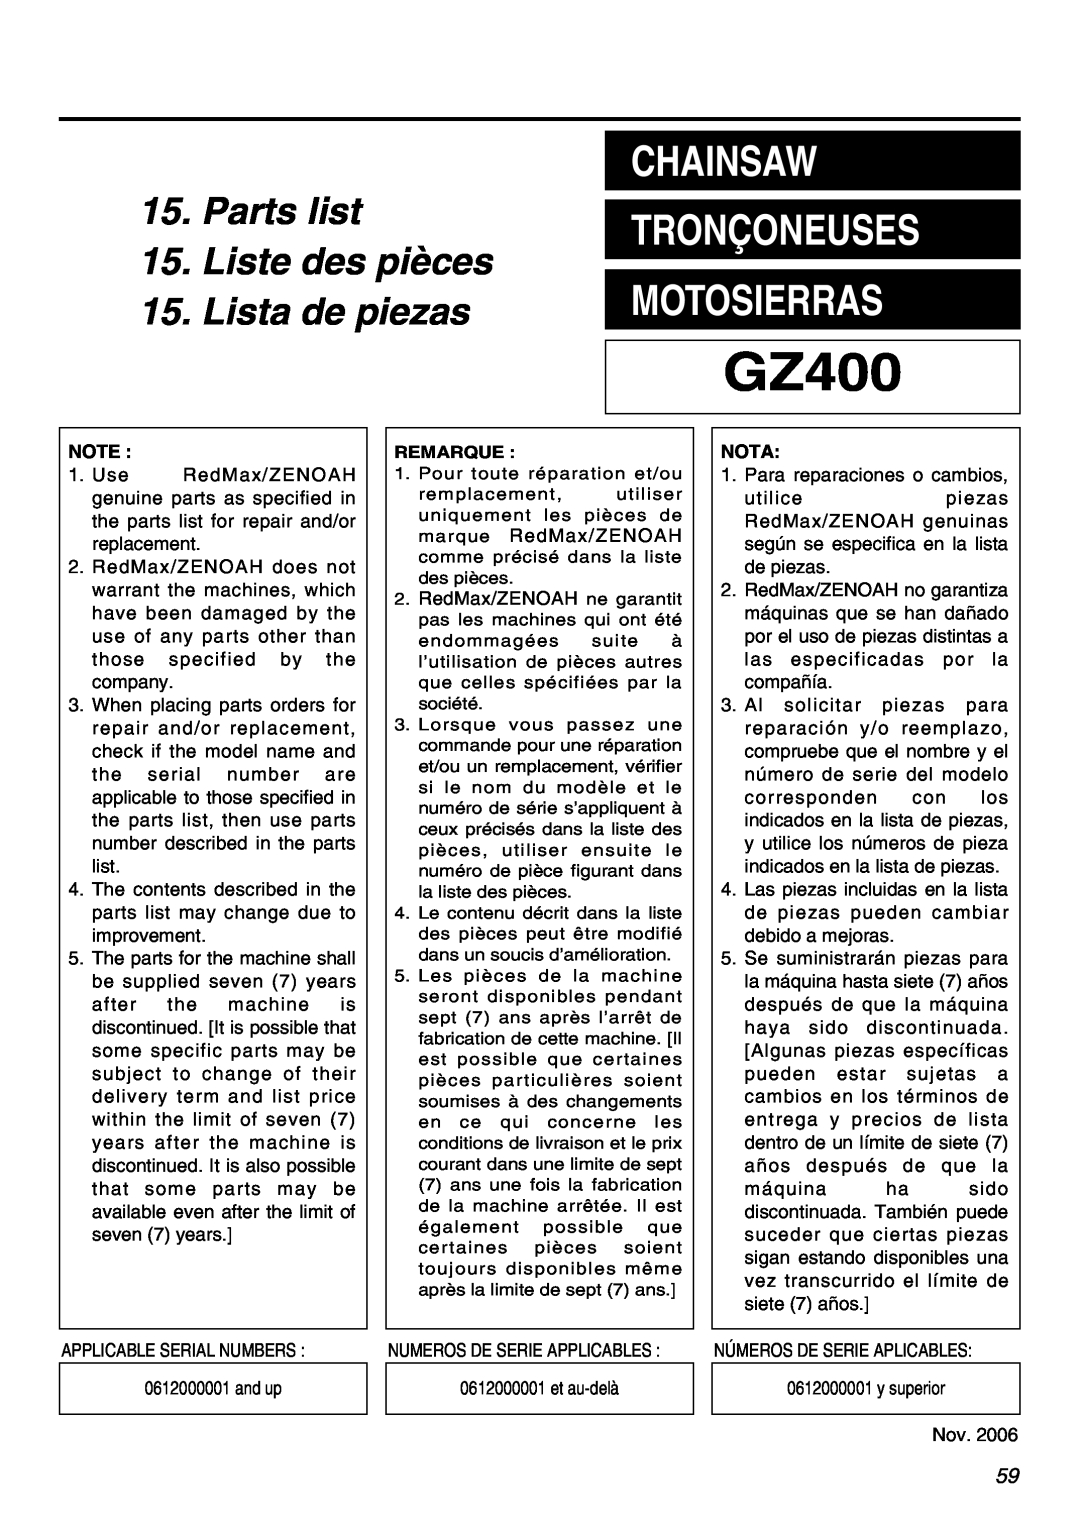 RedMax GZ400 manual Chainsaw, Tronçoneuses, Motosierras, Parts list, Liste des pièces, Lista de piezas 